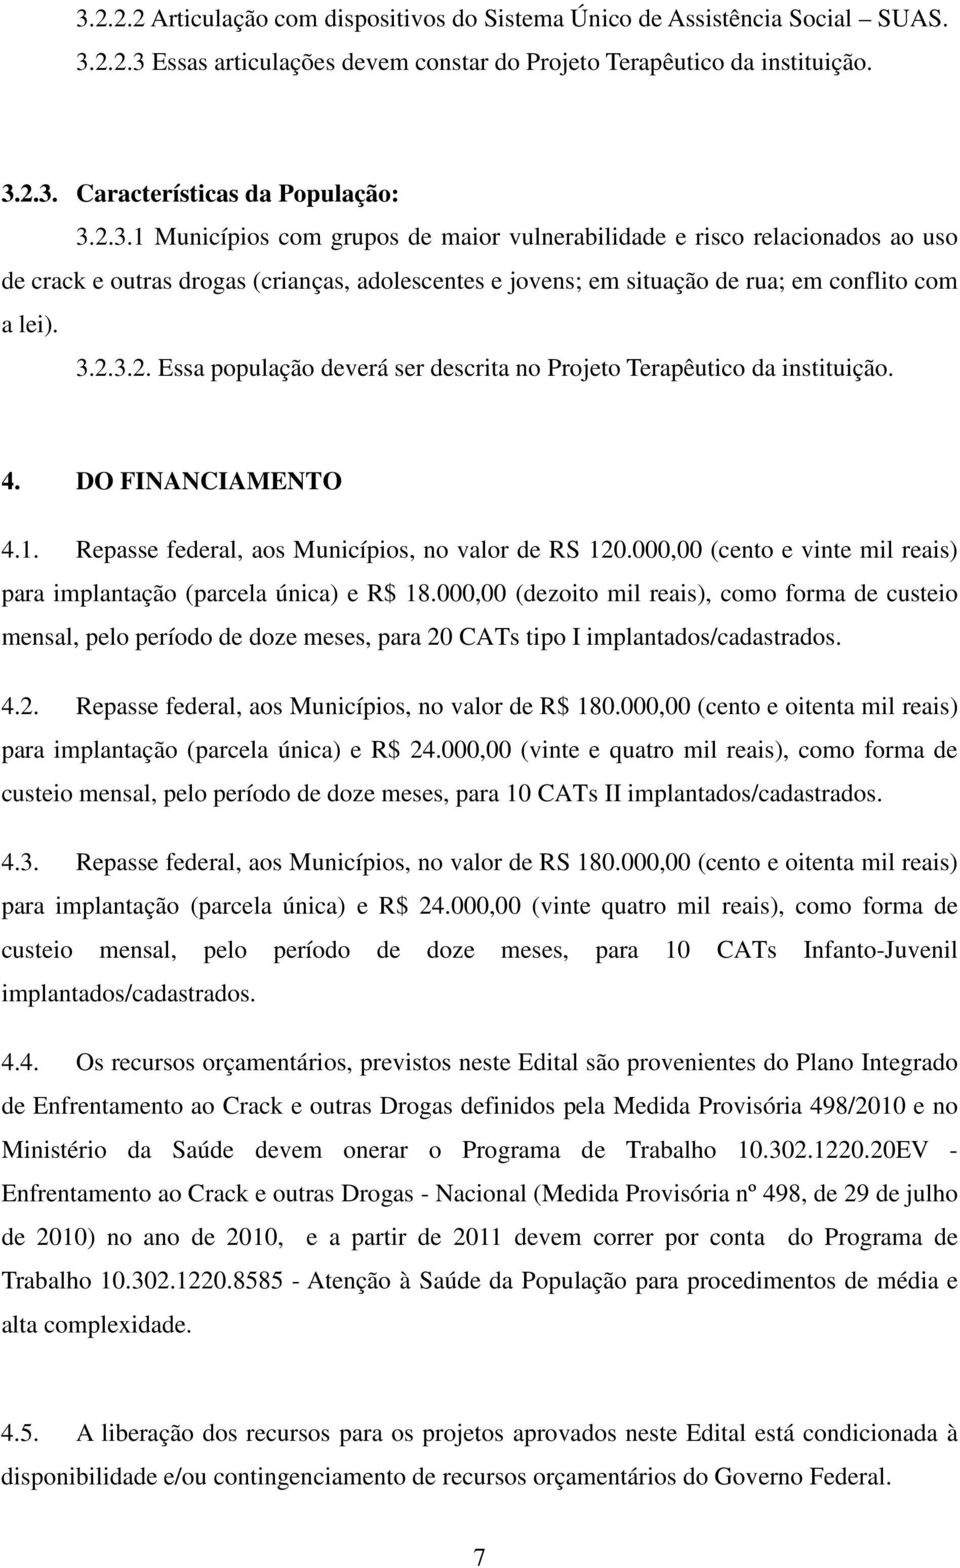 4. DO FINANCIAMENTO 4.1. Repasse federal, aos Municípios, no valor de RS 120.000,00 (cento e vinte mil reais) para implantação (parcela única) e R$ 18.